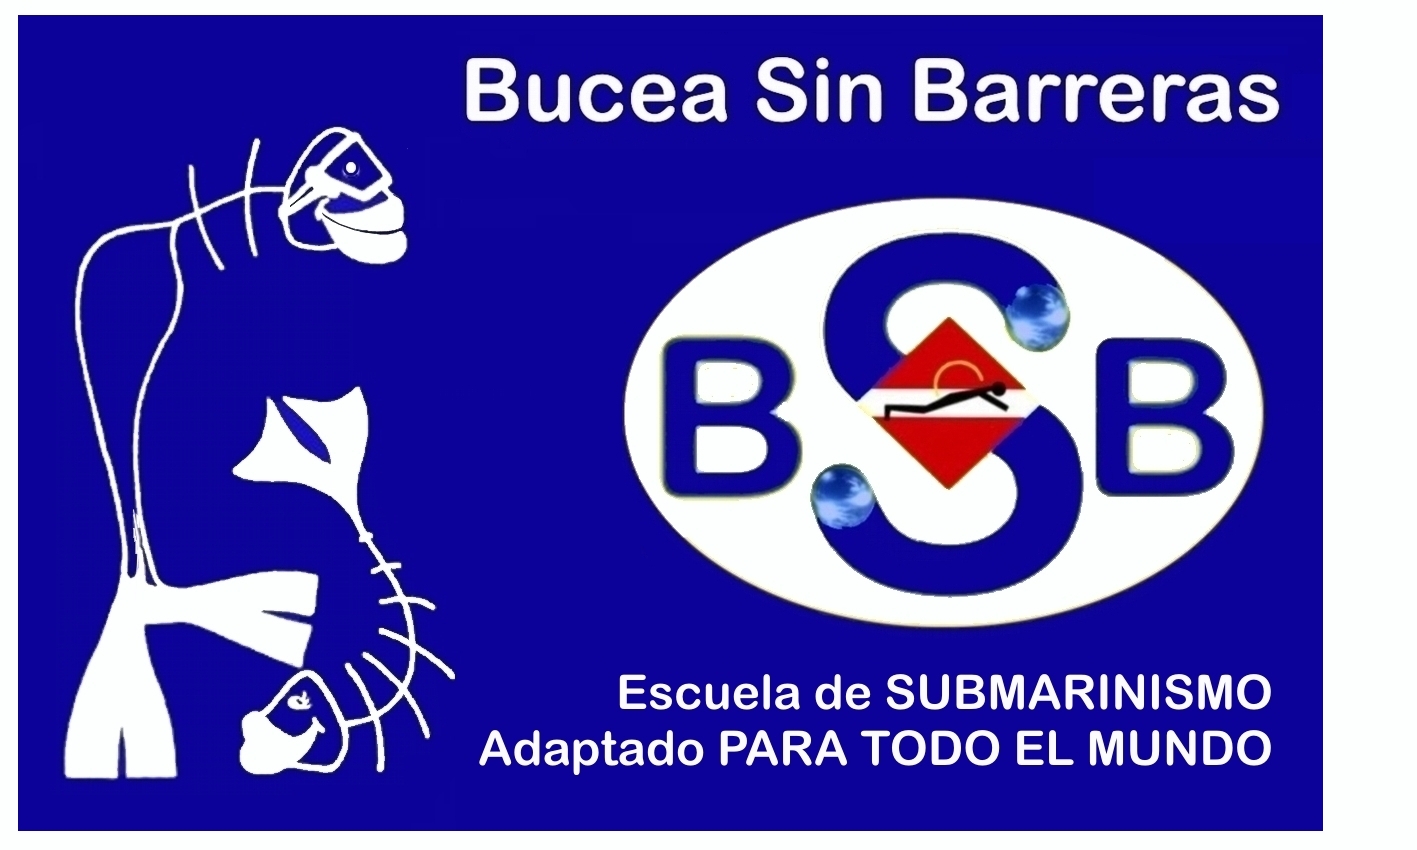 B.S.B. - Bucea Sin Barreras: POR LA IMAGEN NOS CONOCERÁS